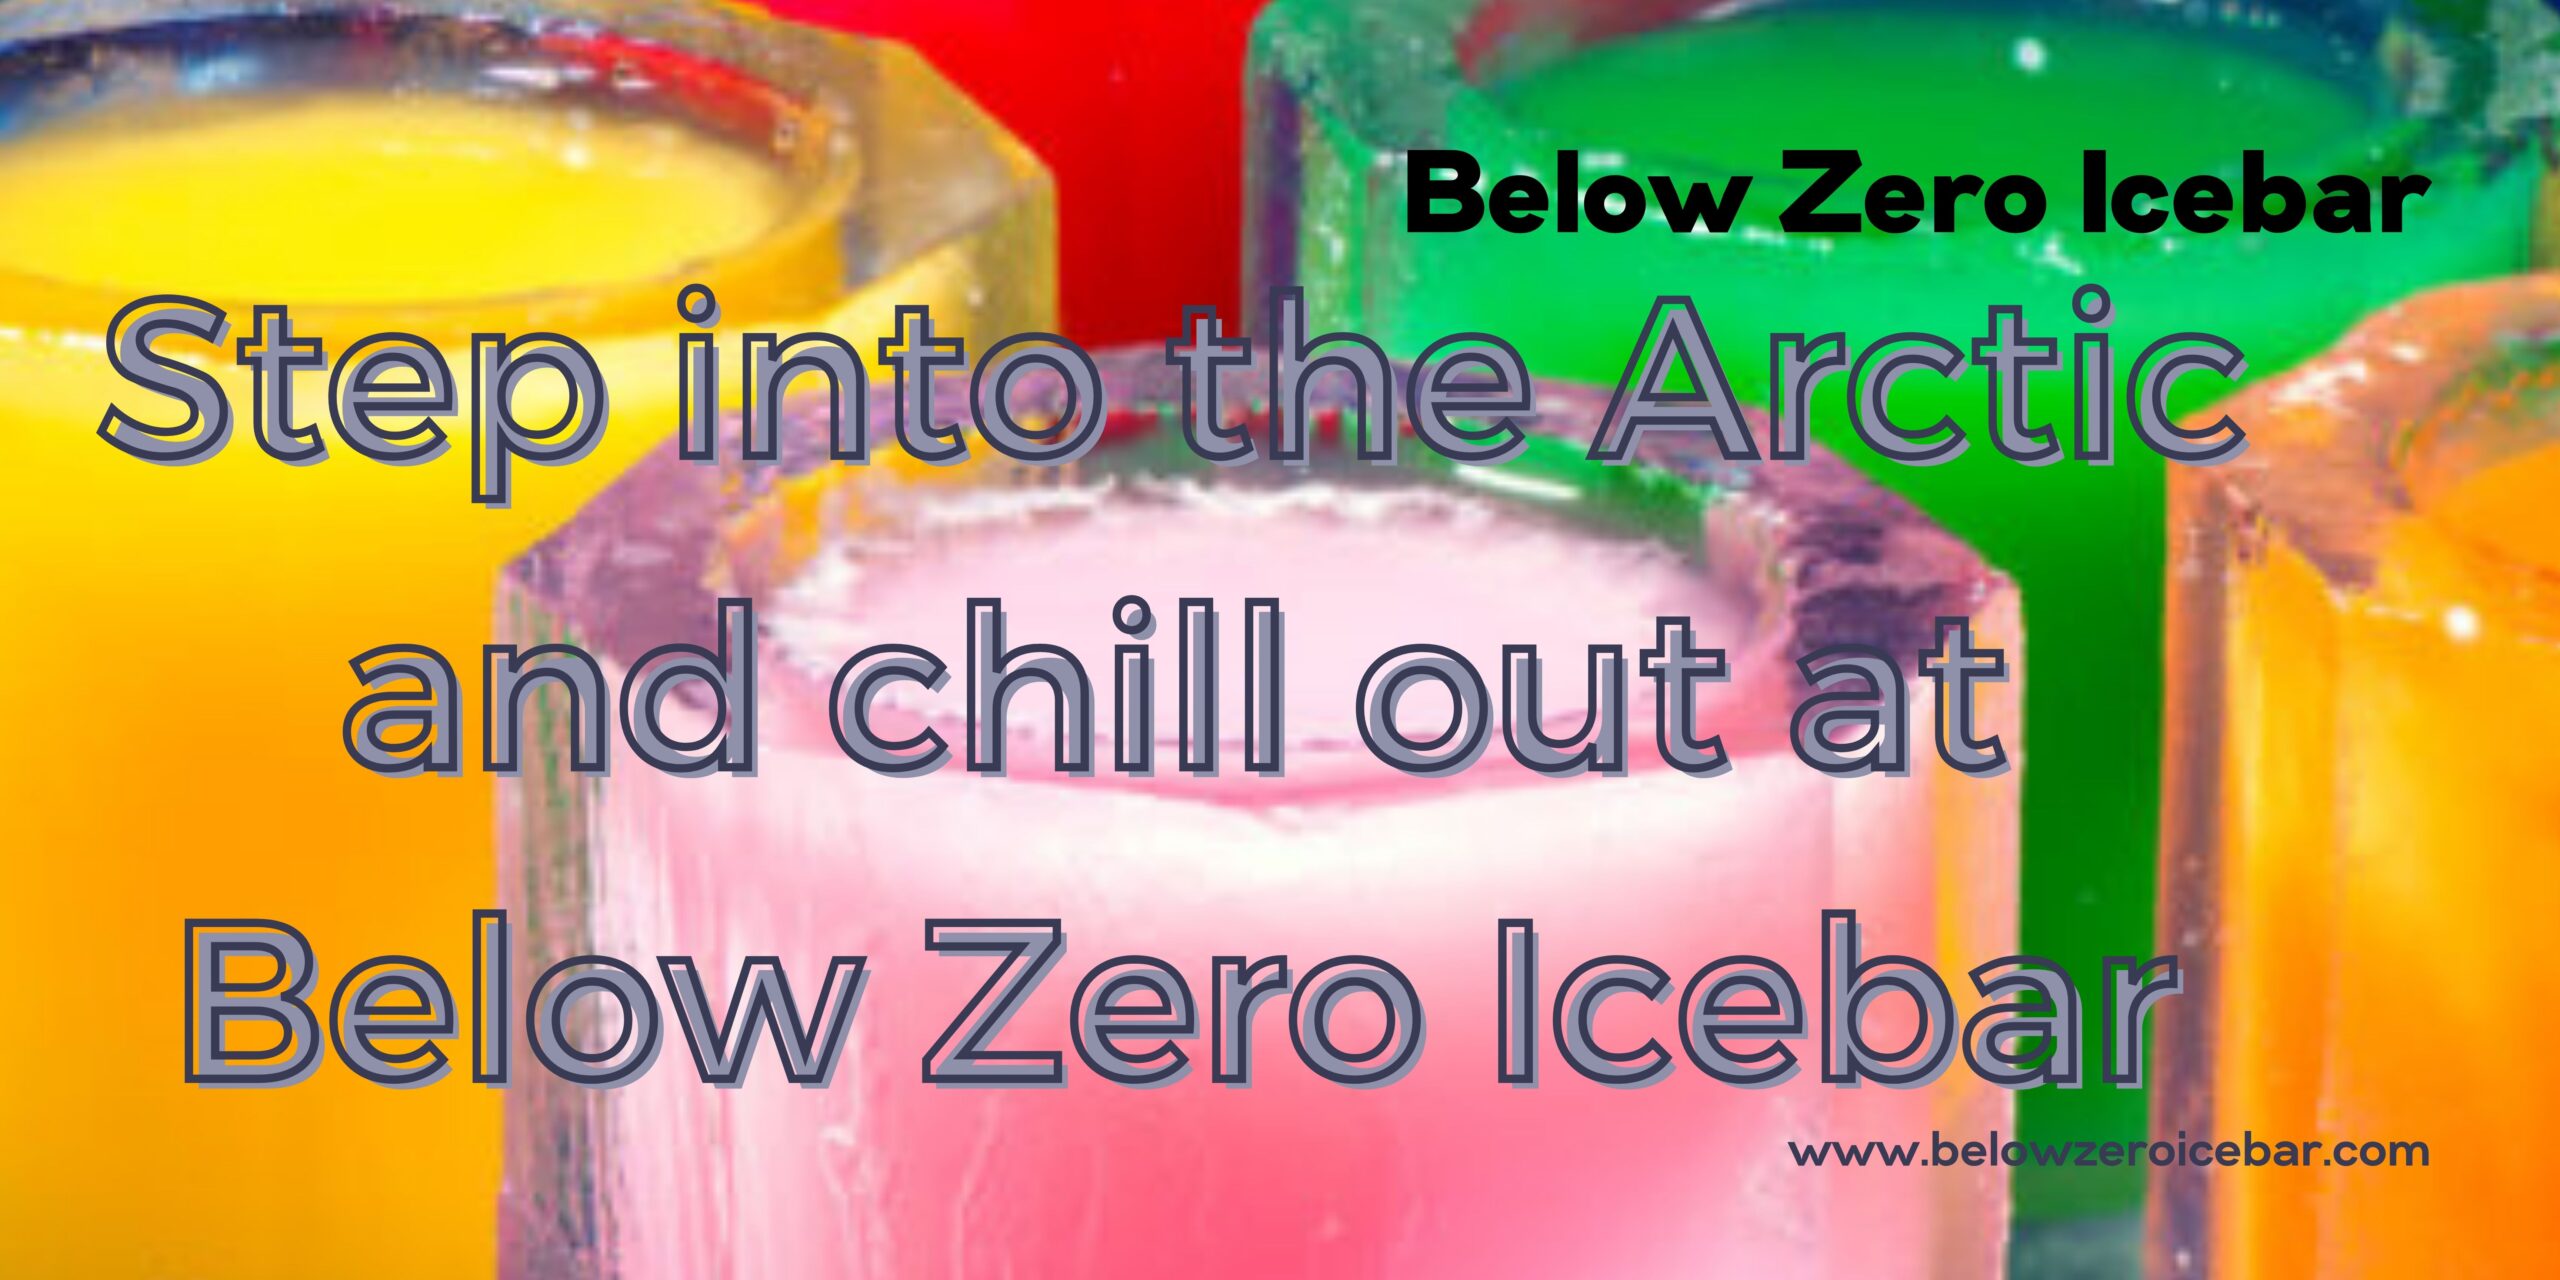 Step into a Winter Wonderland at Below Zero Icebar